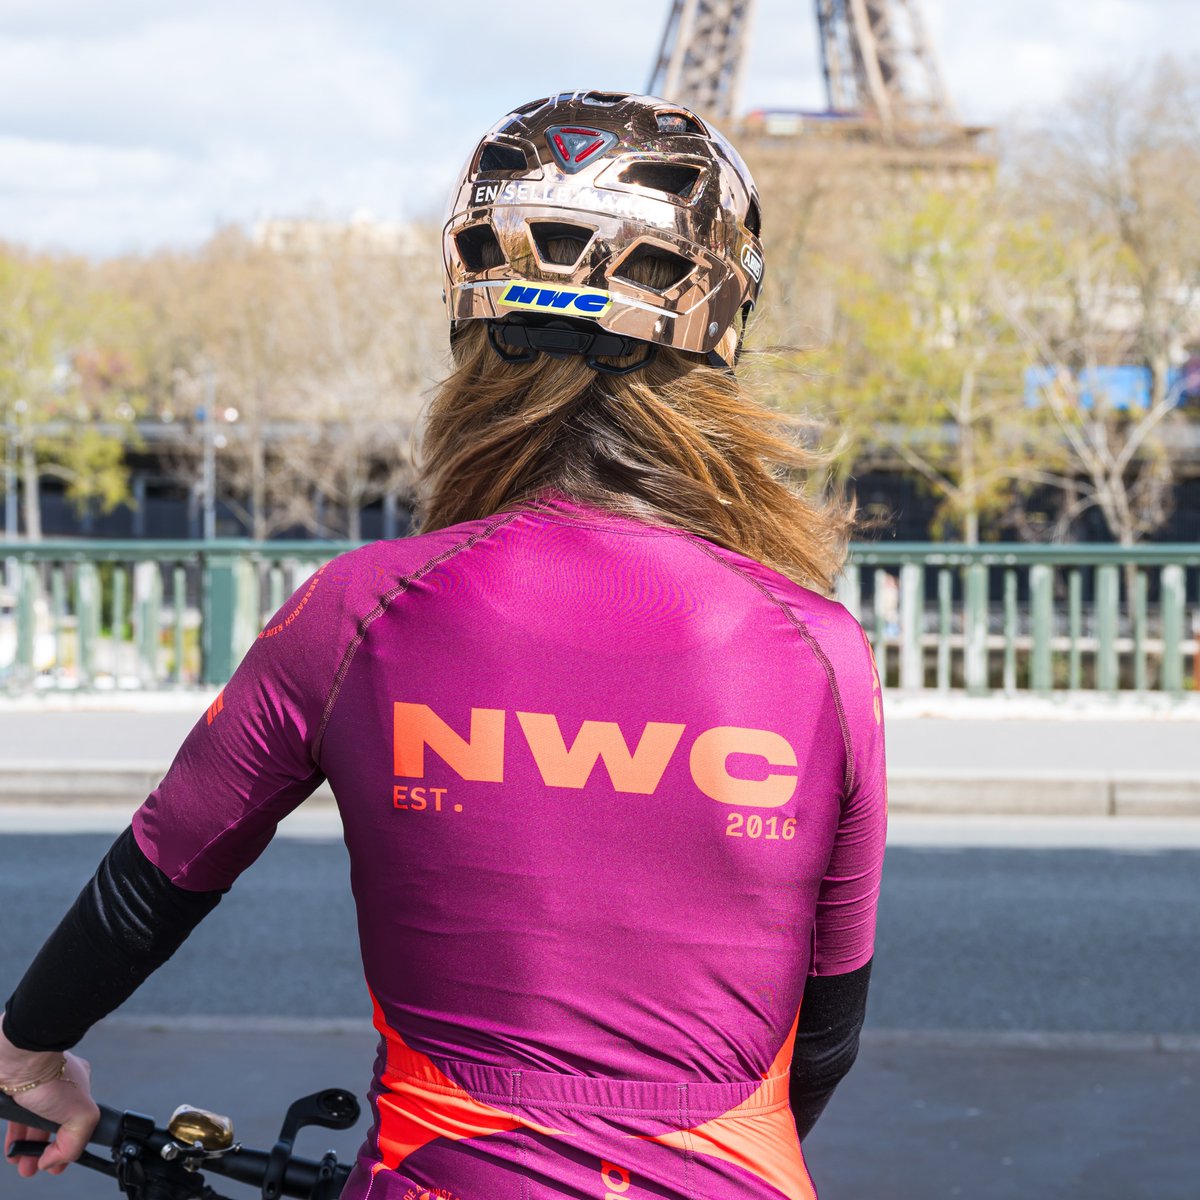 🚲 Ne manquez pas la prochaine édition du Nicola Werner Challenge (@NWCParis), la grande course de cyclisme solidaire en faveur de la recherche contre les cancers de l’utérus à @GustaveRoussy. ✨ Créé par Moritz Werner en mémoire de sa femme Nicola Werner, le #NWC soutient les